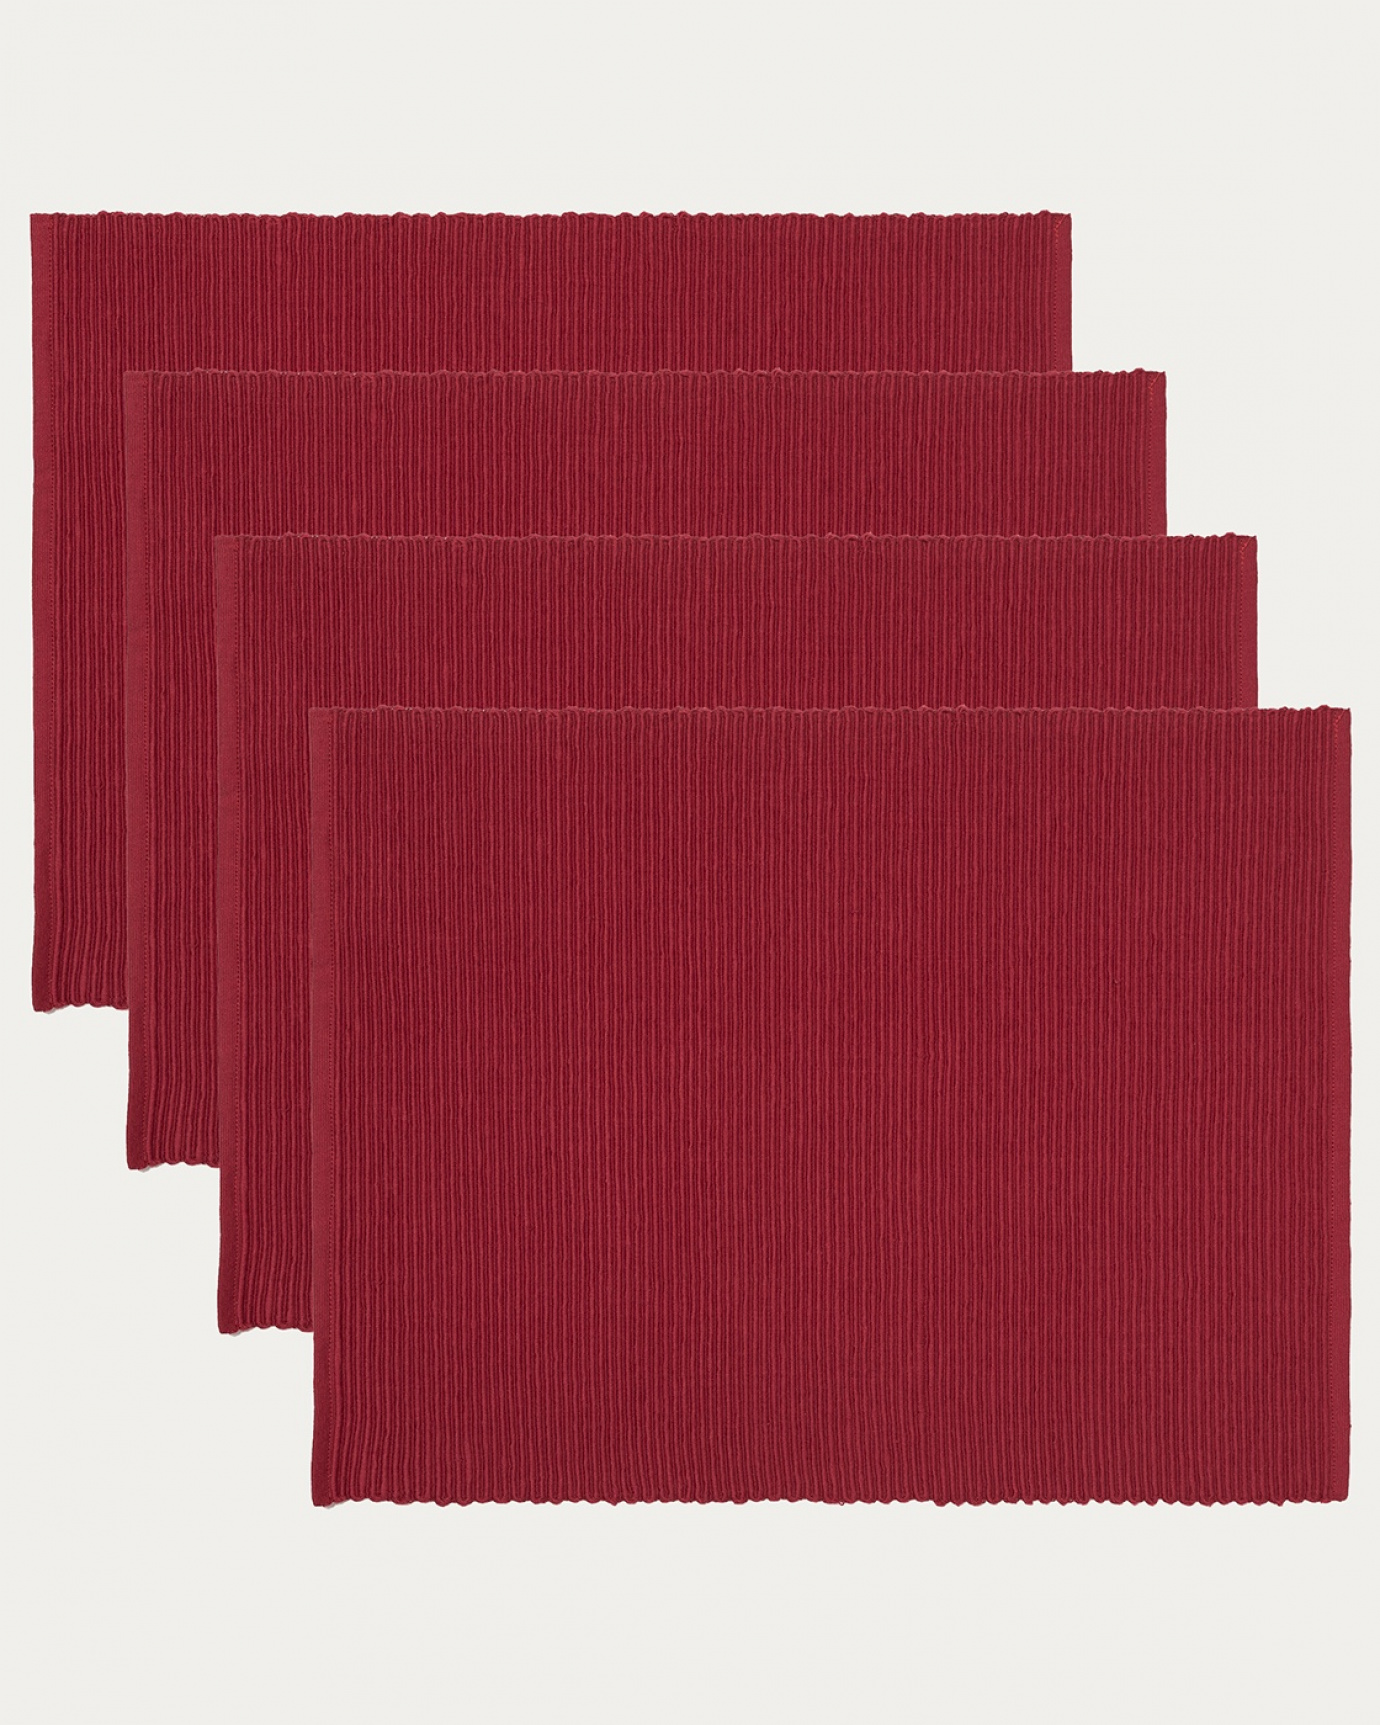 Produktbild röd UNI bordstablett av mjuk bomull i ribbad kvalité från LINUM DESIGN. Storlek 35x46 cm och säljs i 4-pack.